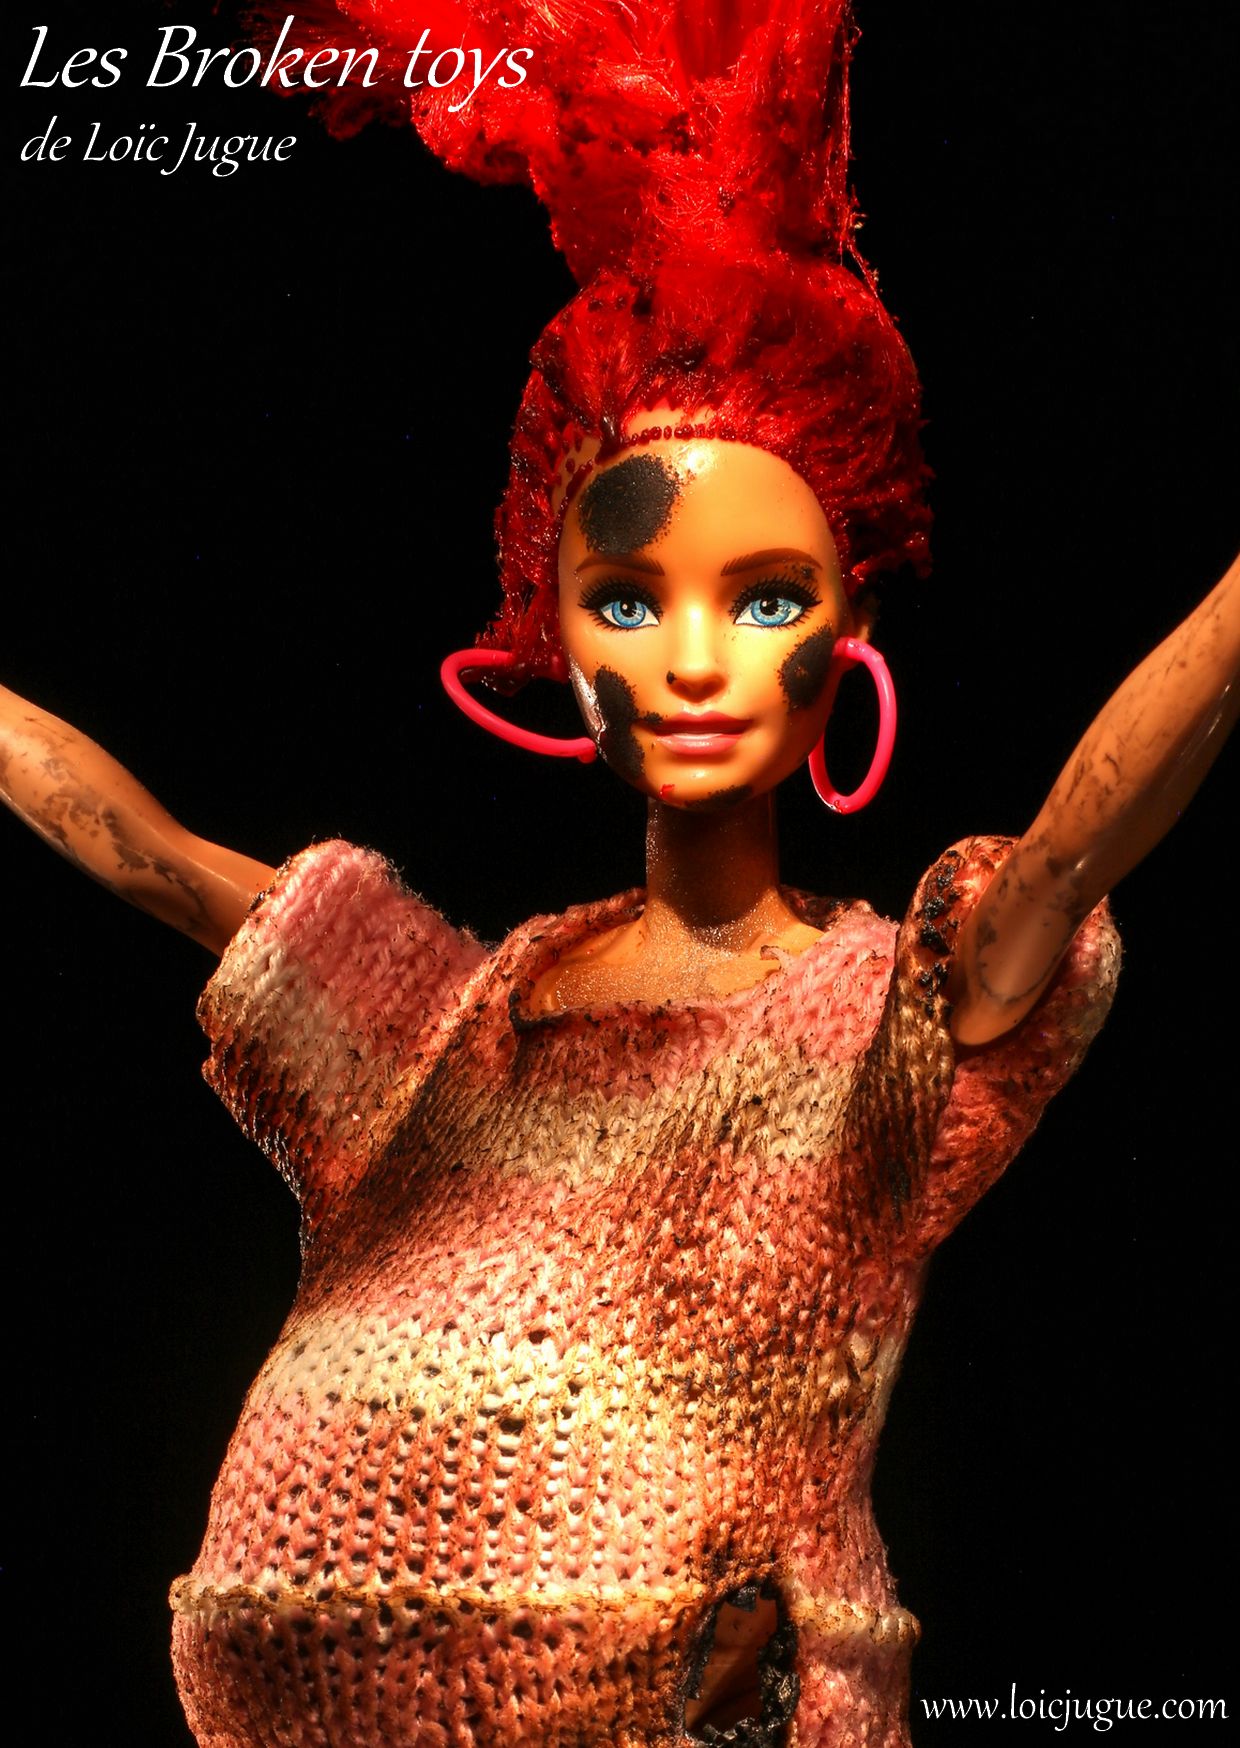 Les broken toys de Loïc Jugue: Barbie is pragnate